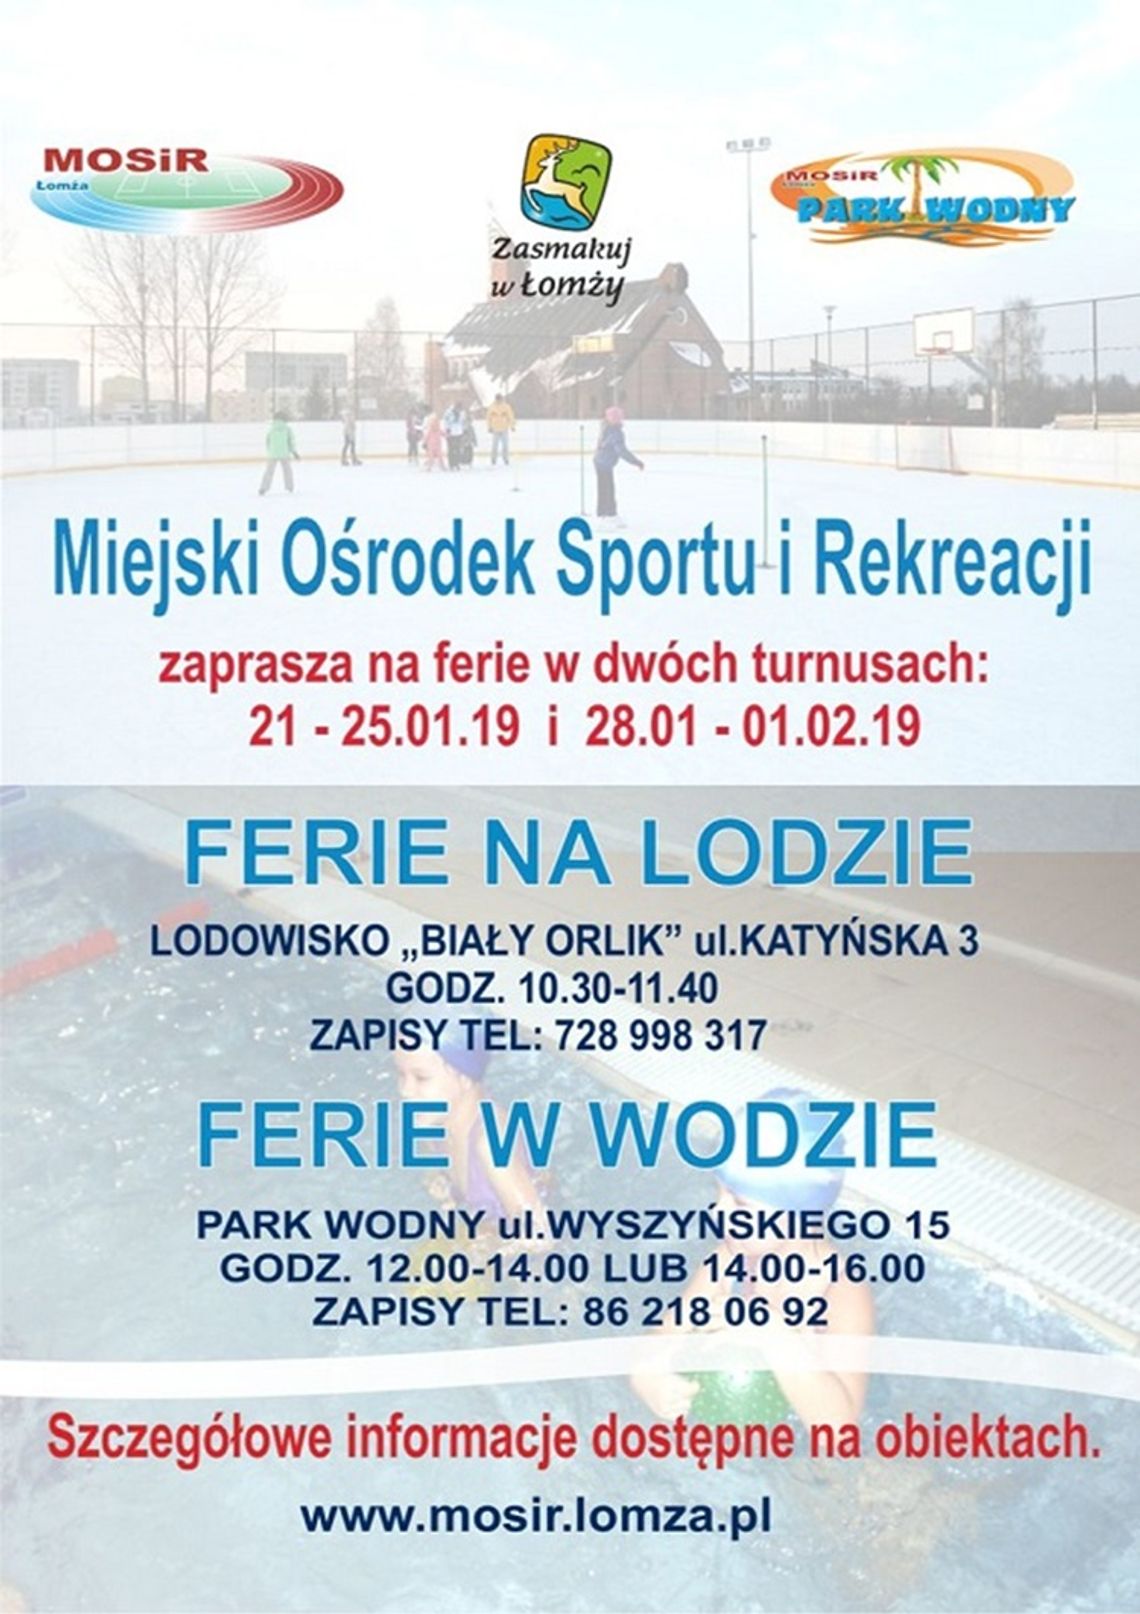 Na lodzie i w wodzie, czyli ferie z Miejskim Ośrodkiem Sportu i Rekreacji w Łomży 